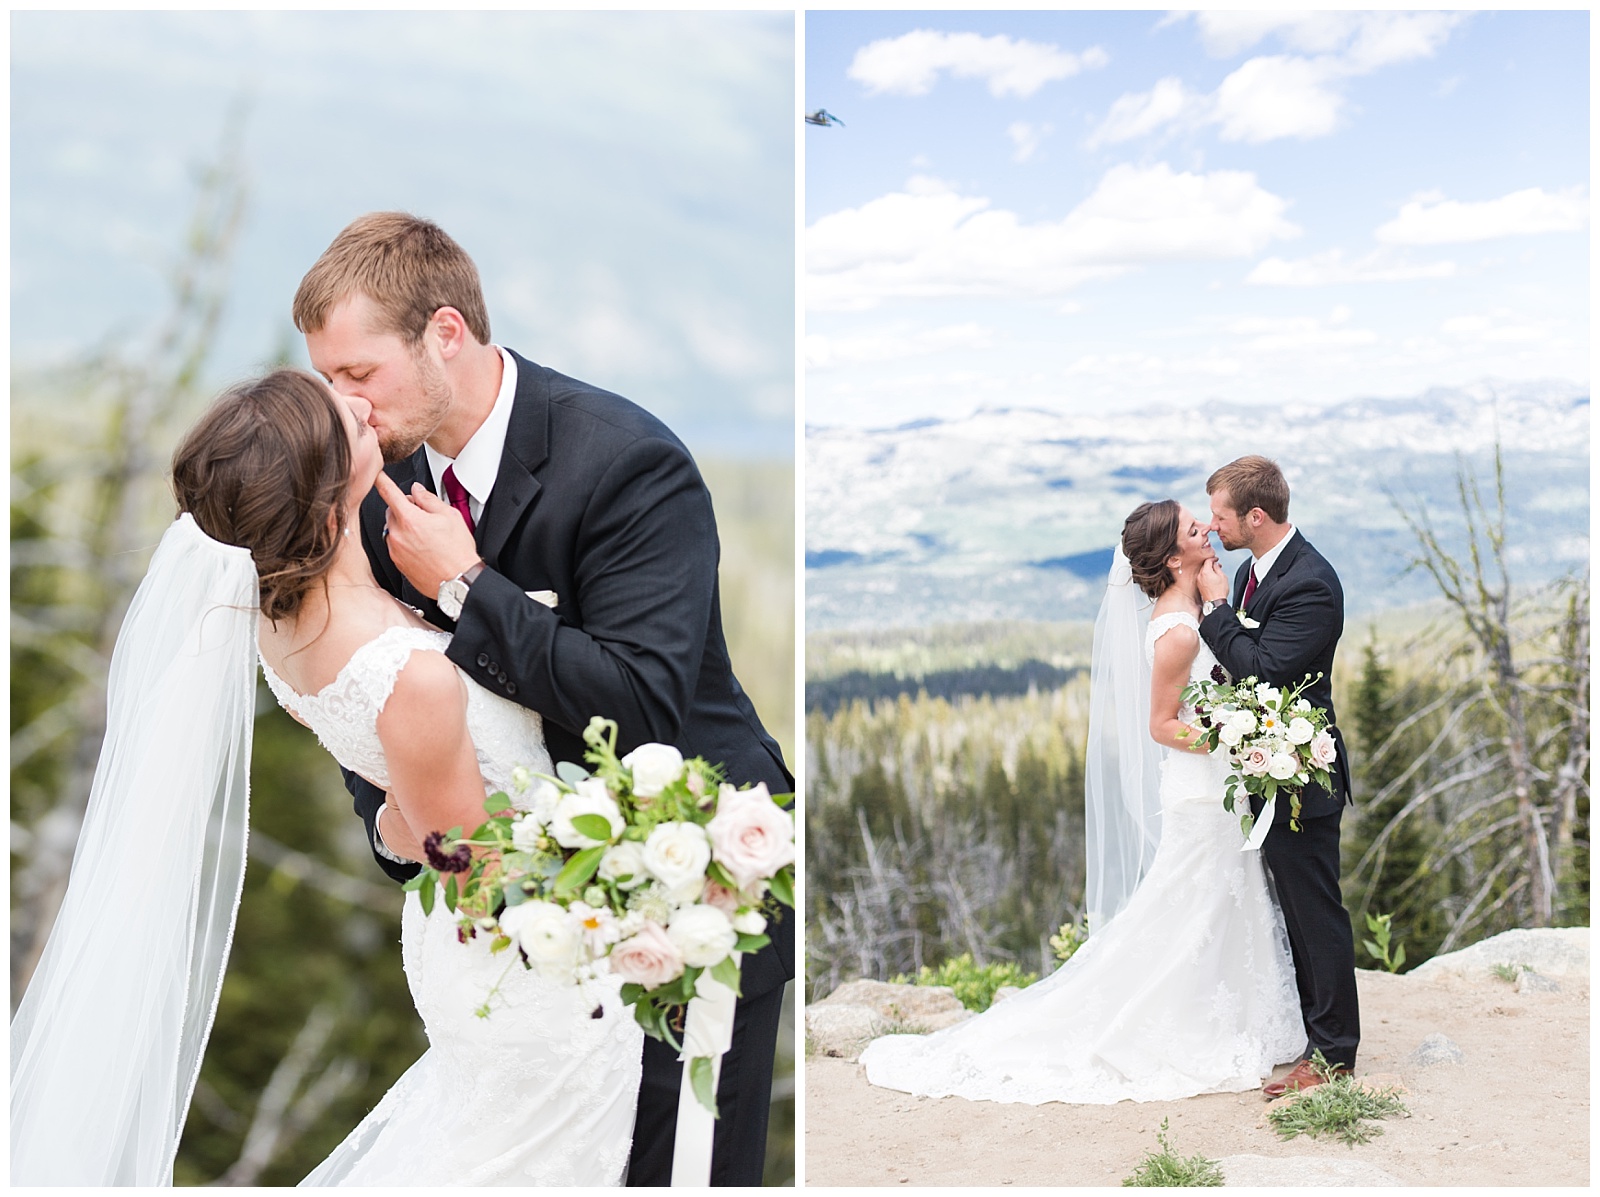 McCall Wedding Photography, McCall Wedding Photographer, McCall Idaho Weddings, Brundage Mountain Resort, Brundage Wedding, Idaho Mountain Wedding, 